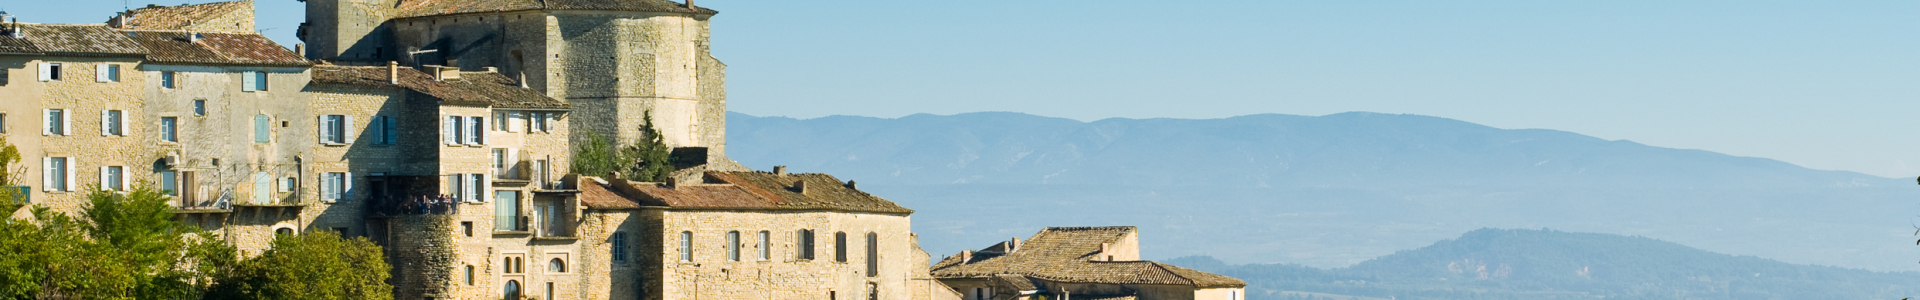 Vaucluse tourisme : week-end en Provence 3 à 5* tout compris